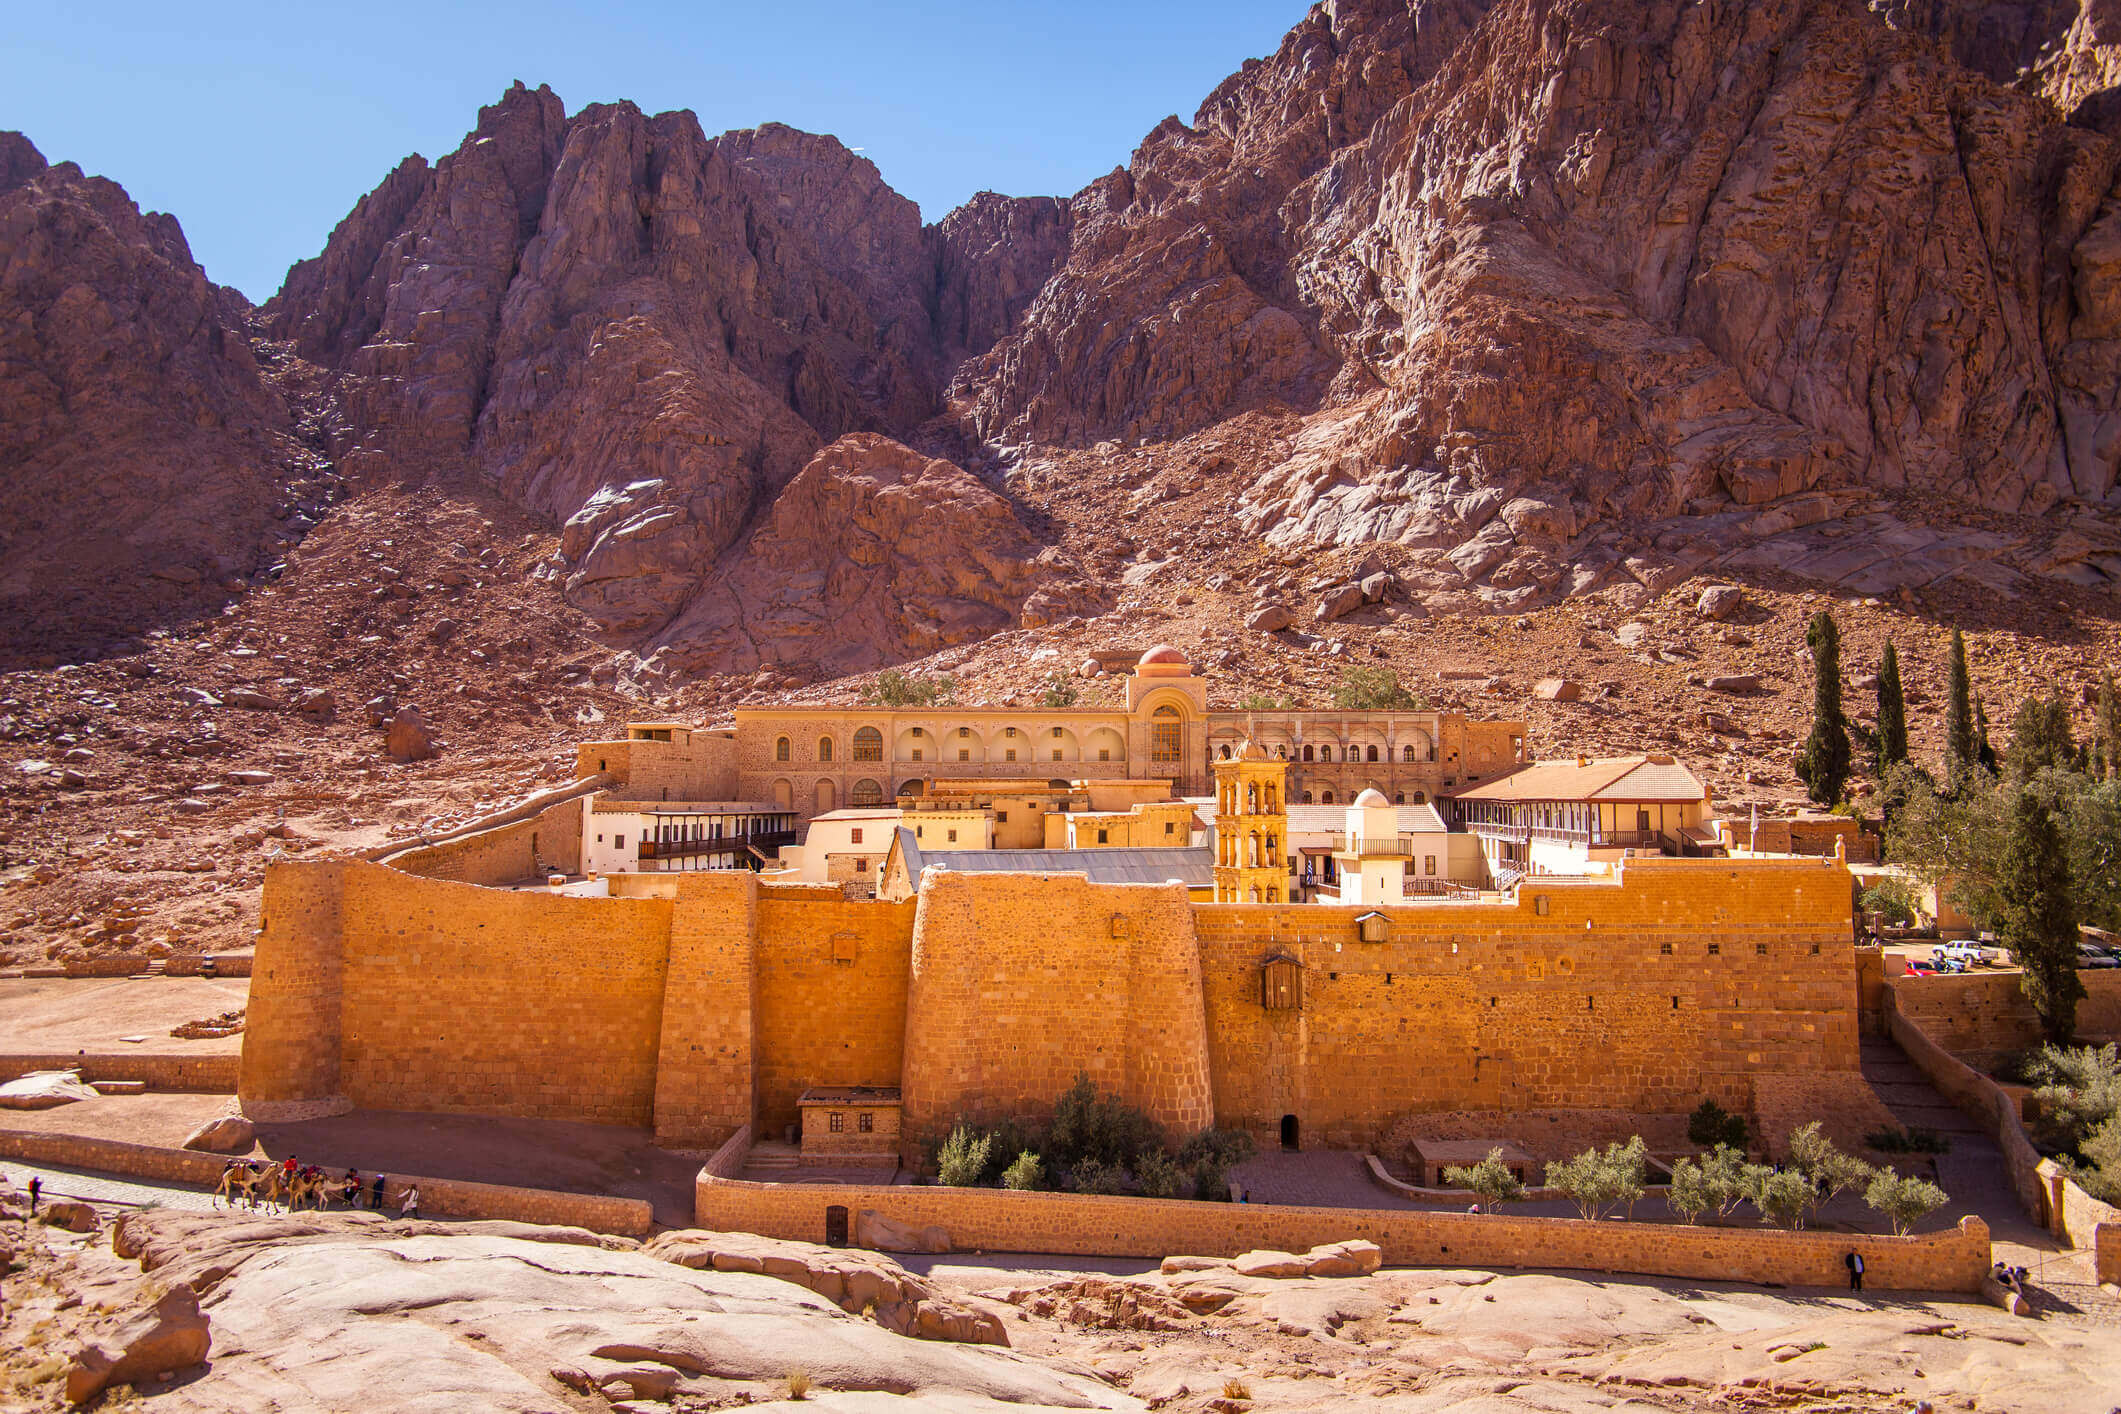 Saint Catherine Monastery in Egypt